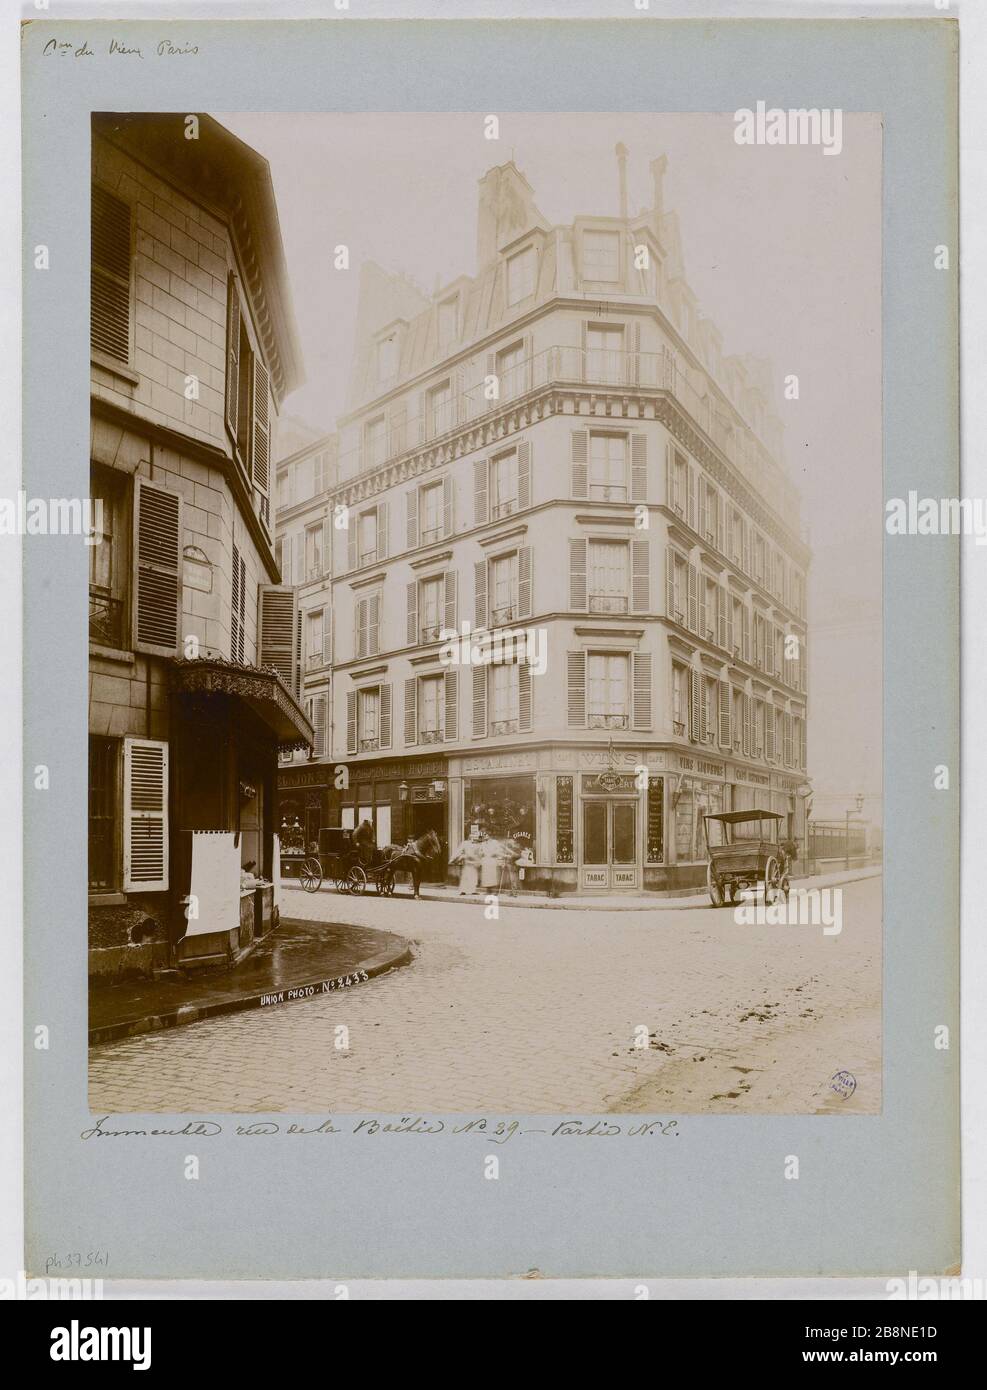 Building, 29 rue de la Boetie (North-East), Paris (VIII arr.) Immeuble, 29 rue de la Boëtie (partie Nord-Est), Paris (VIIIème arr.), 1898. Union Photographique Française. Paris, musée Carnavalet. Stock Photo